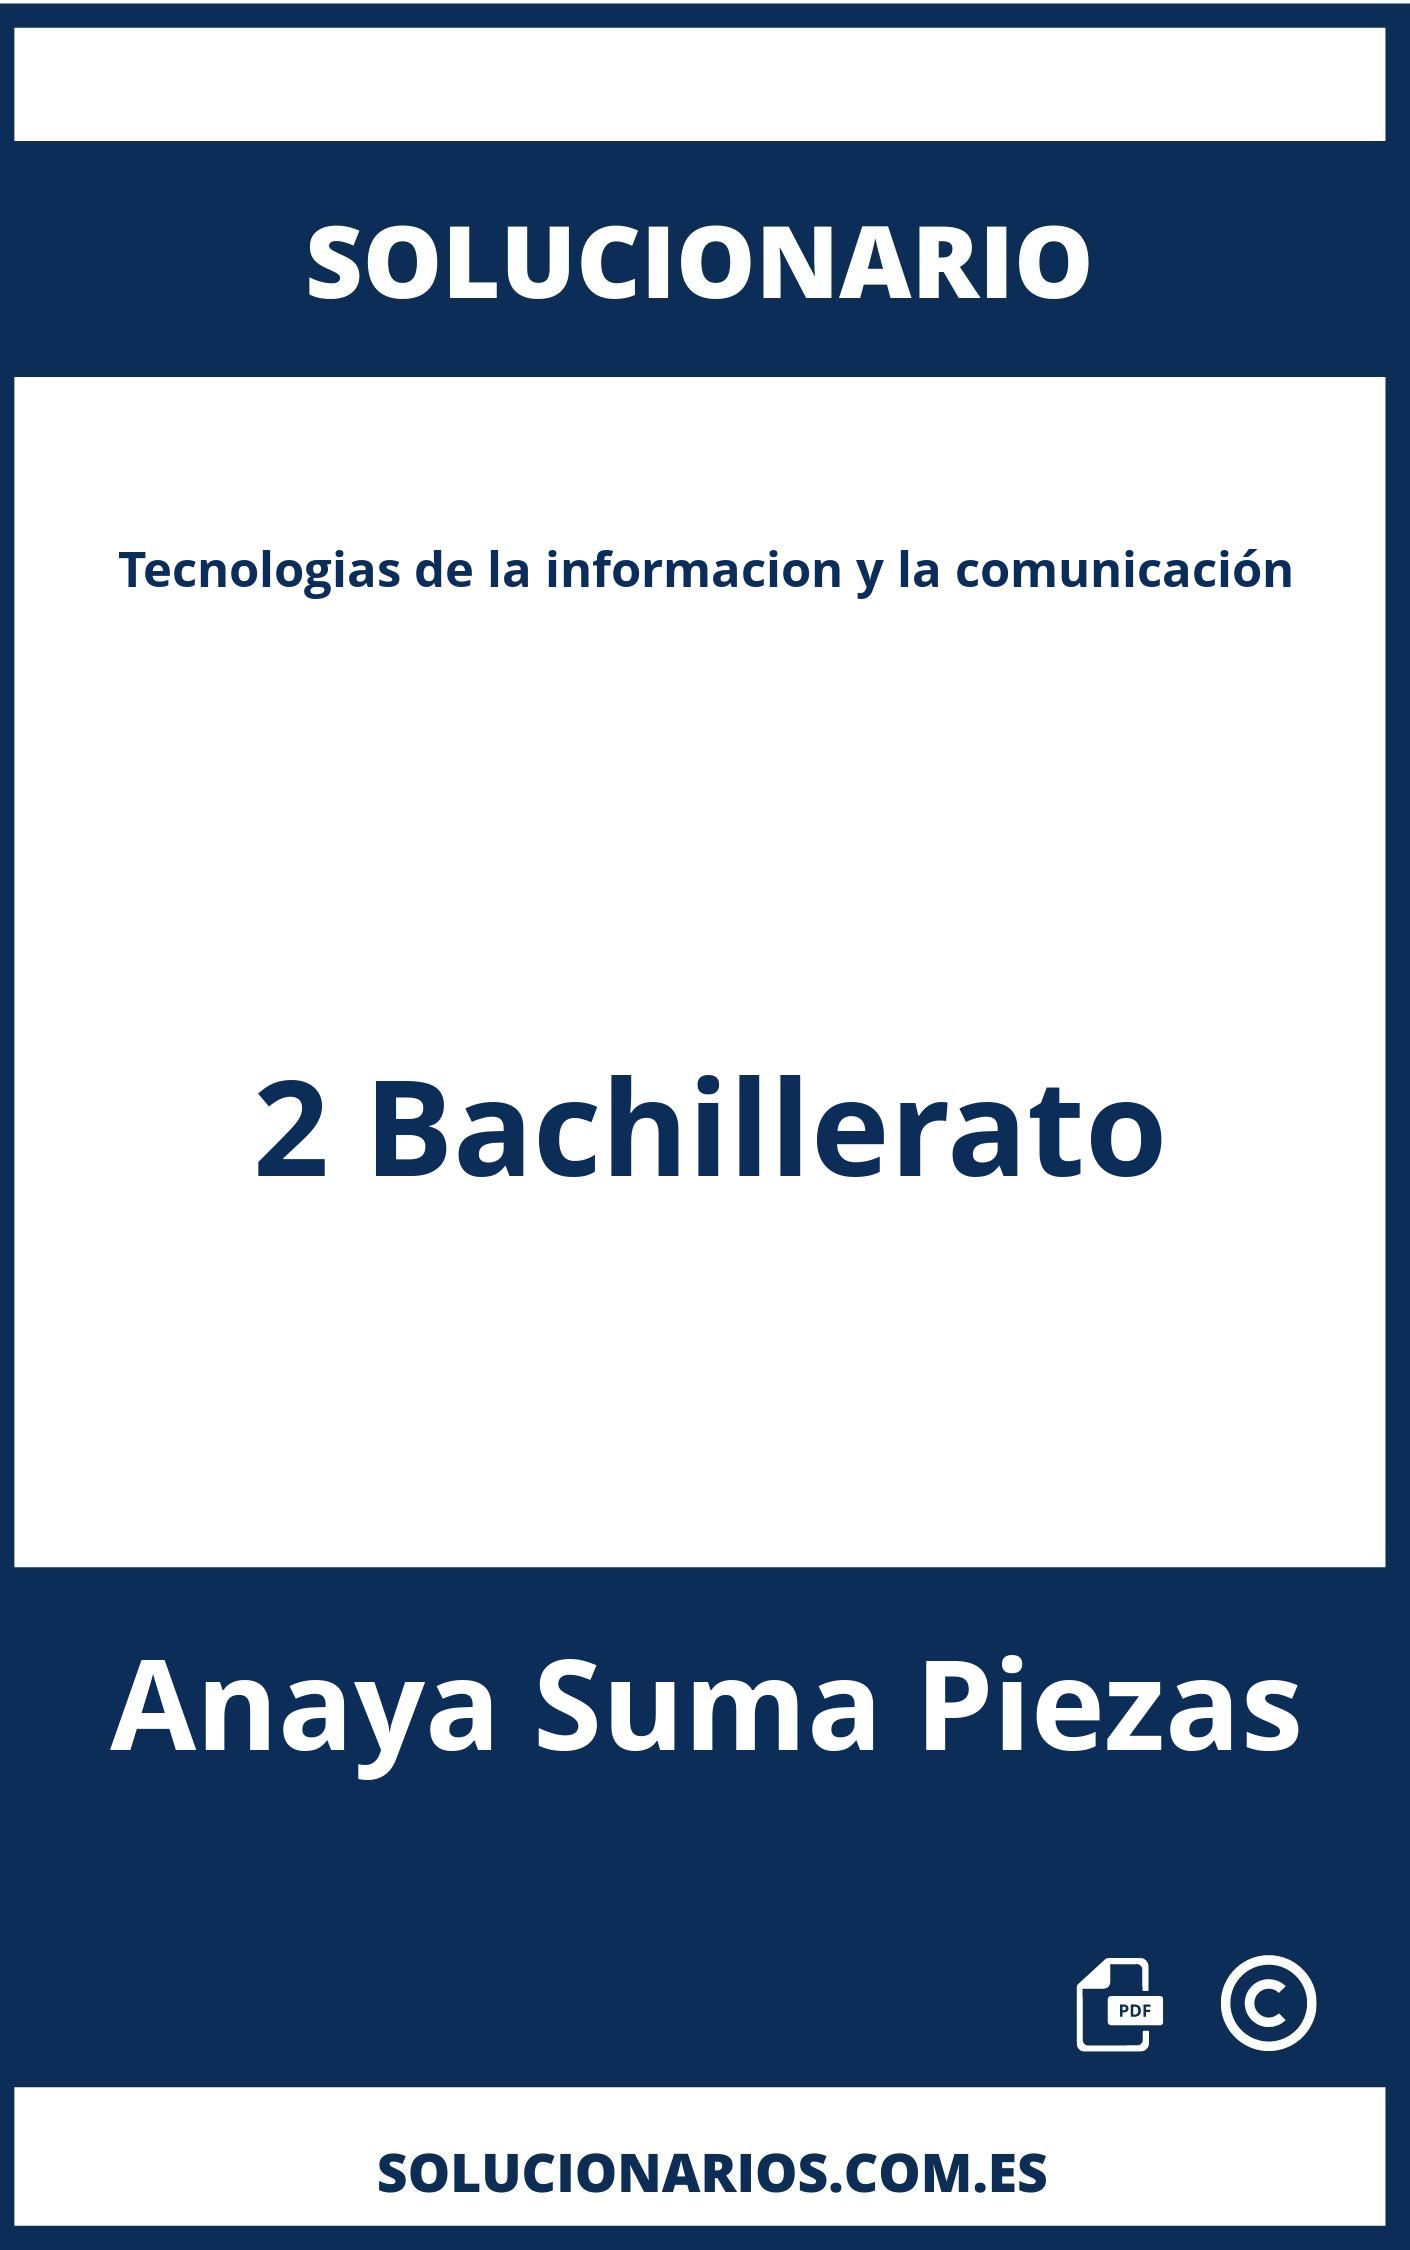 Solucionario Tecnologias de la informacion y la comunicación 2 Bachillerato Anaya Suma Piezas